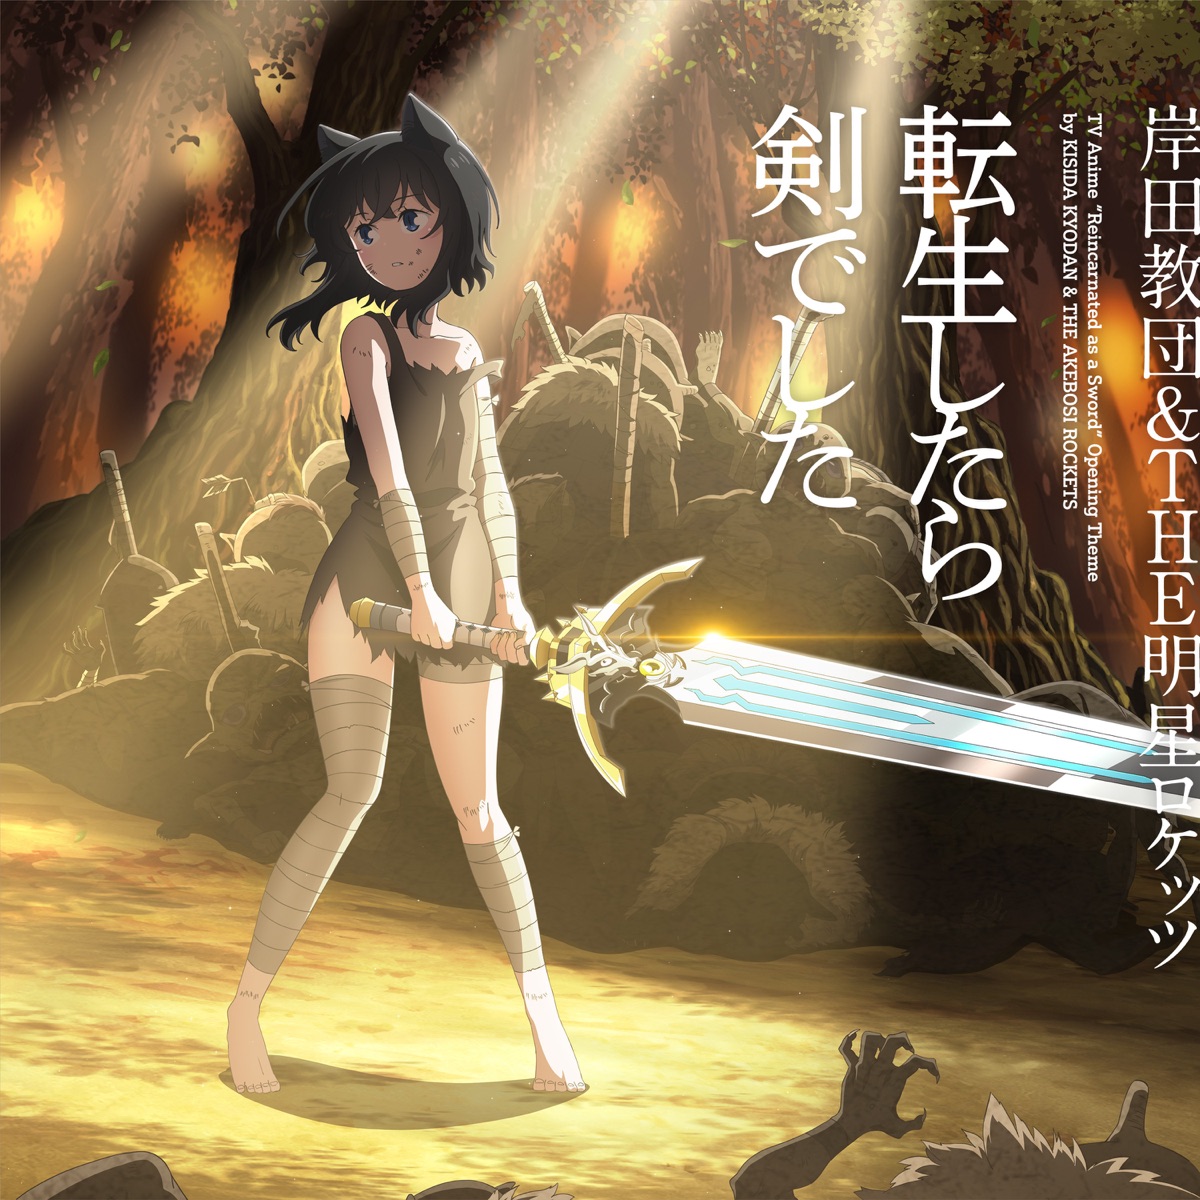 岸田教団&THE明星ロケッツ - TVアニメ「転生したら剣でした」オープニングテーマ「転生したら剣でした」